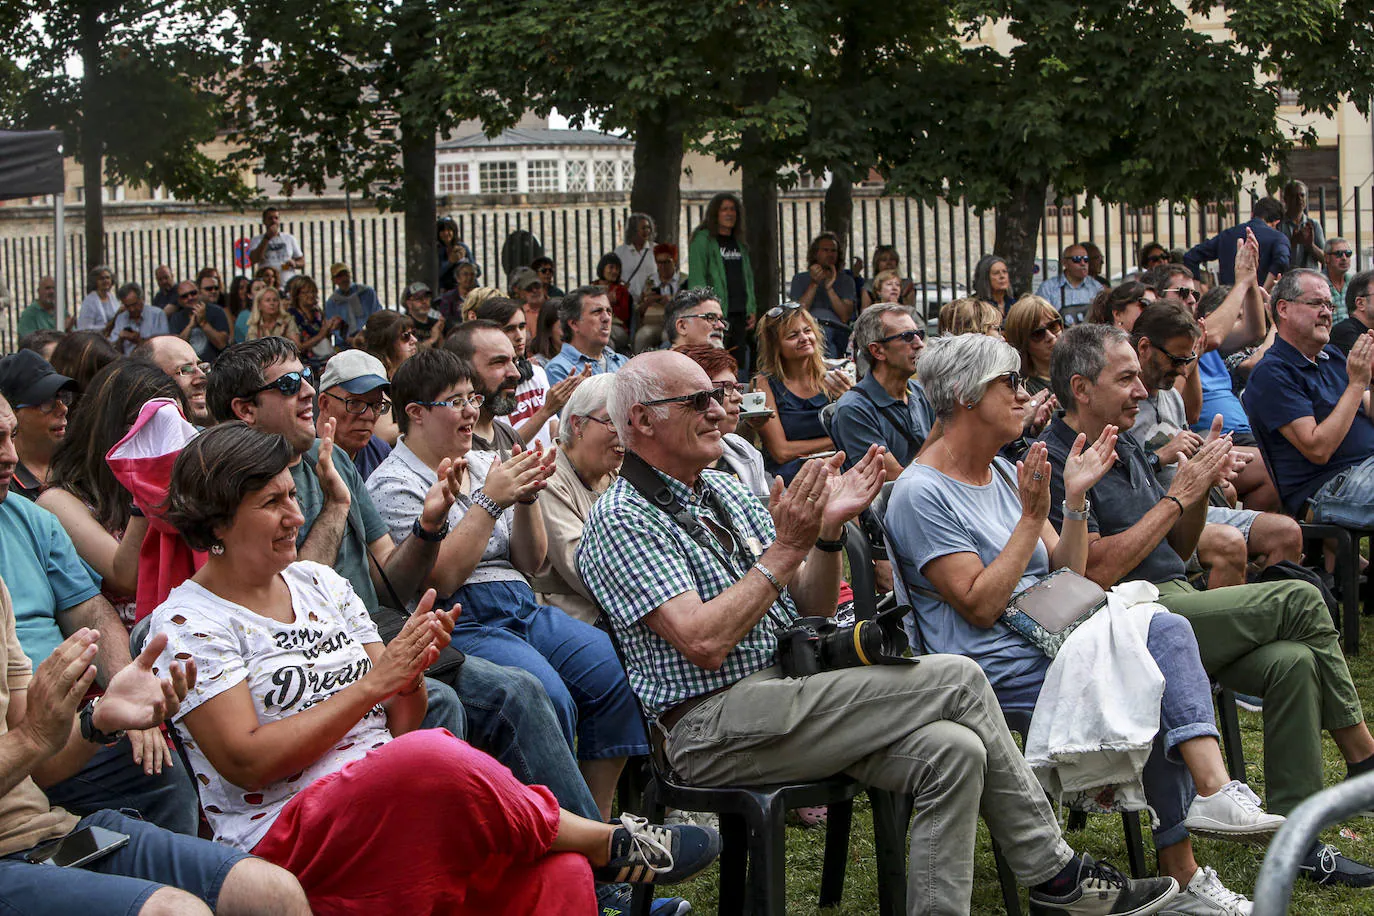 Fotos: El Festival de Jazz de Vitoria inunda de música el Jardín de Falerina